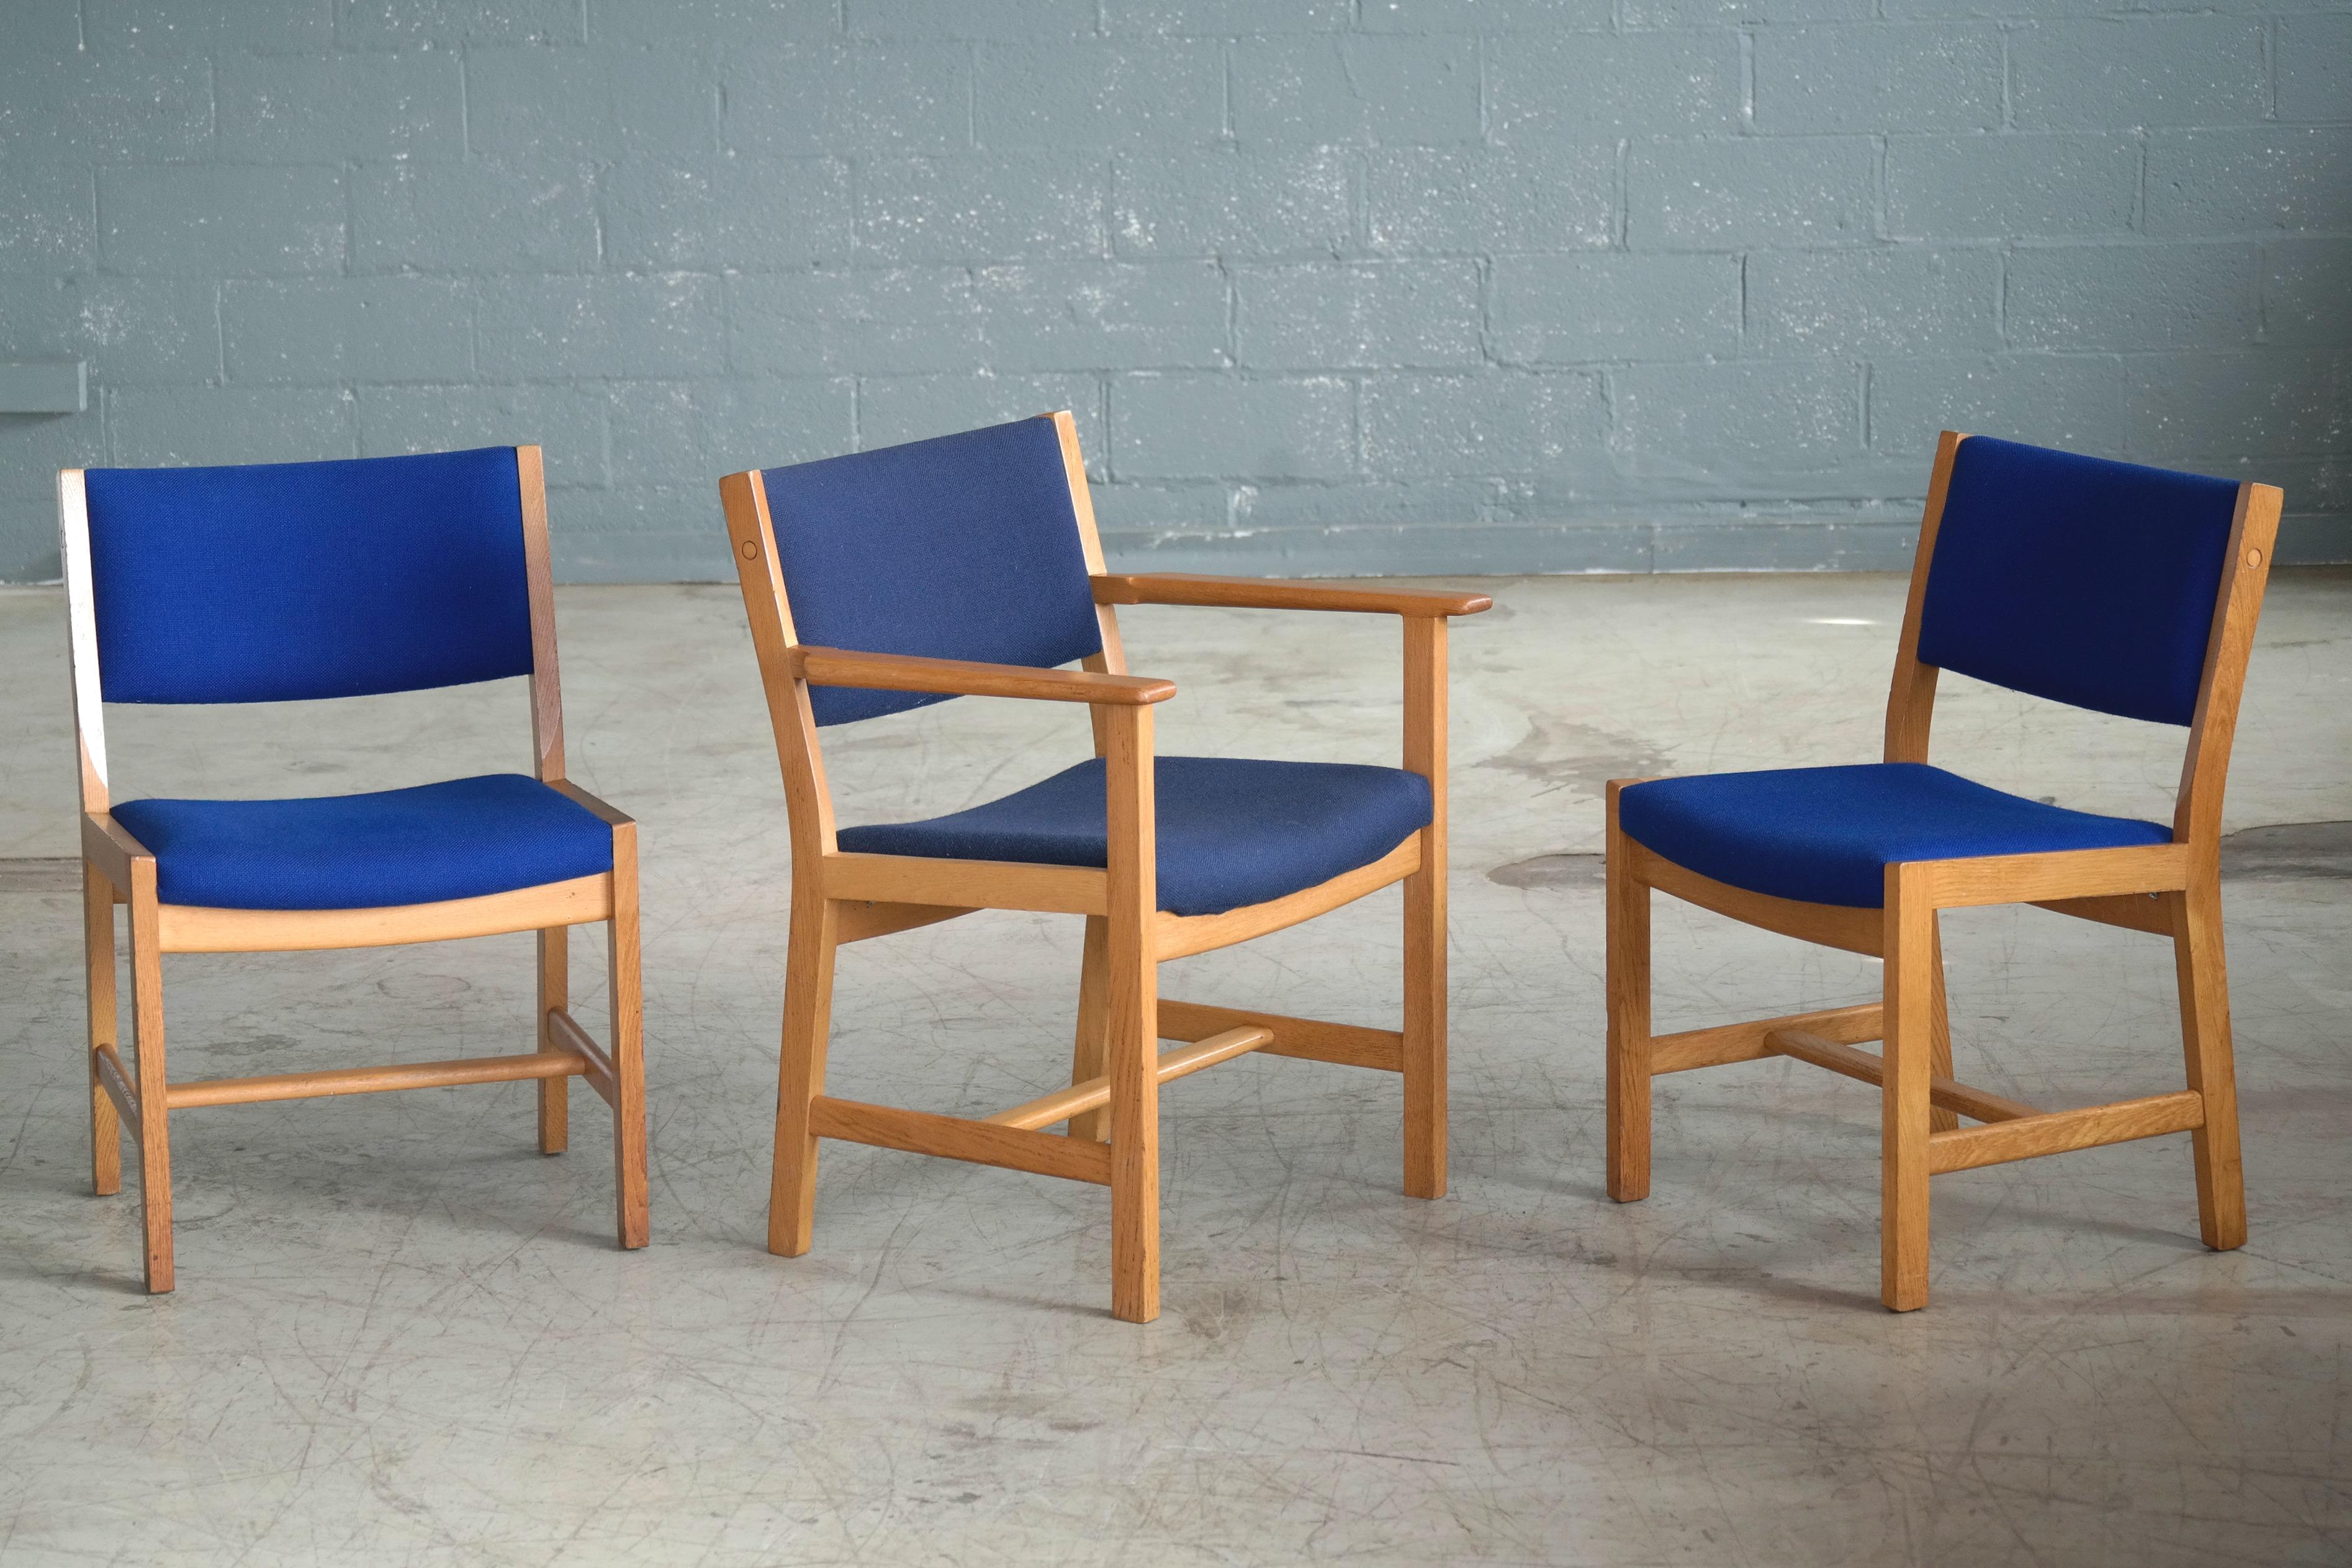 Wir lieben die kantigen:: modernen und klaren Linien dieser von Hans Wegner entworfenen Esszimmerstühle:: die in den frühen 1970er Jahren von GETAMA in Dänemark hergestellt wurden. Gefertigt aus massiver Weißeiche und bezogen mit blauem Wollstoff